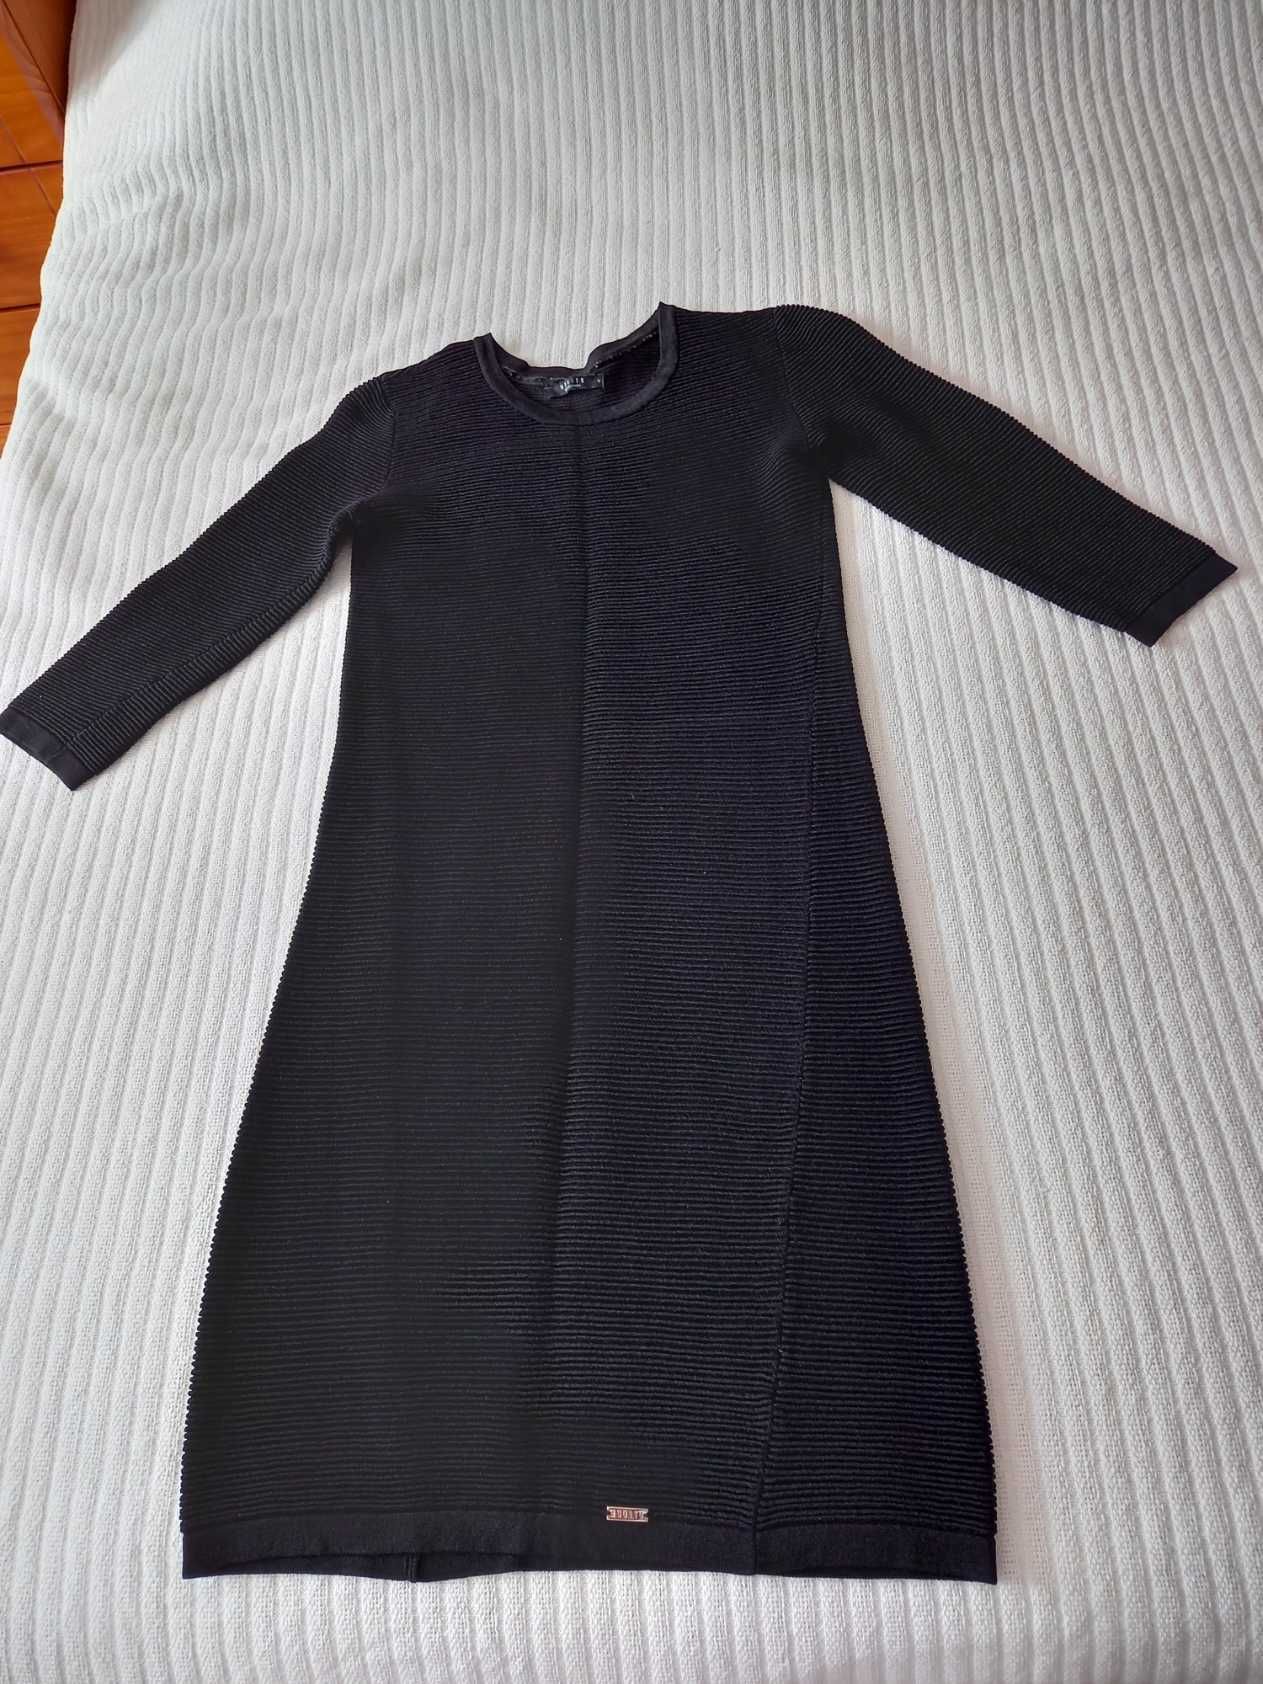 Sukienka jersejowa czarna, rozmiar 36